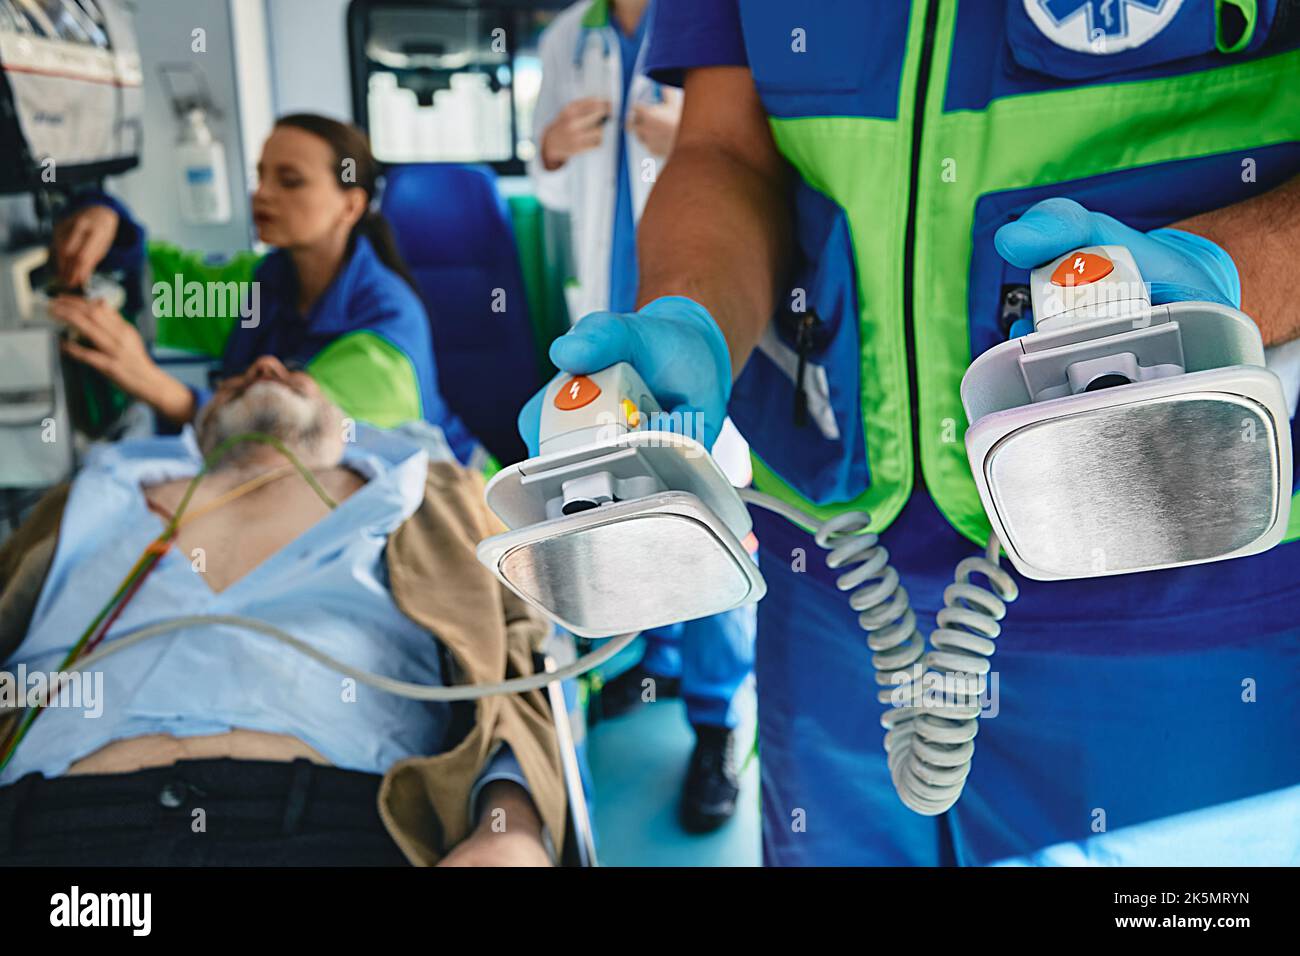 Paramedico preparazione del defibrillatore per la rianimazione cardiopolmonare di un paziente inconscio in ambulanza per salvargli la vita e trasportarlo all'hos Foto Stock